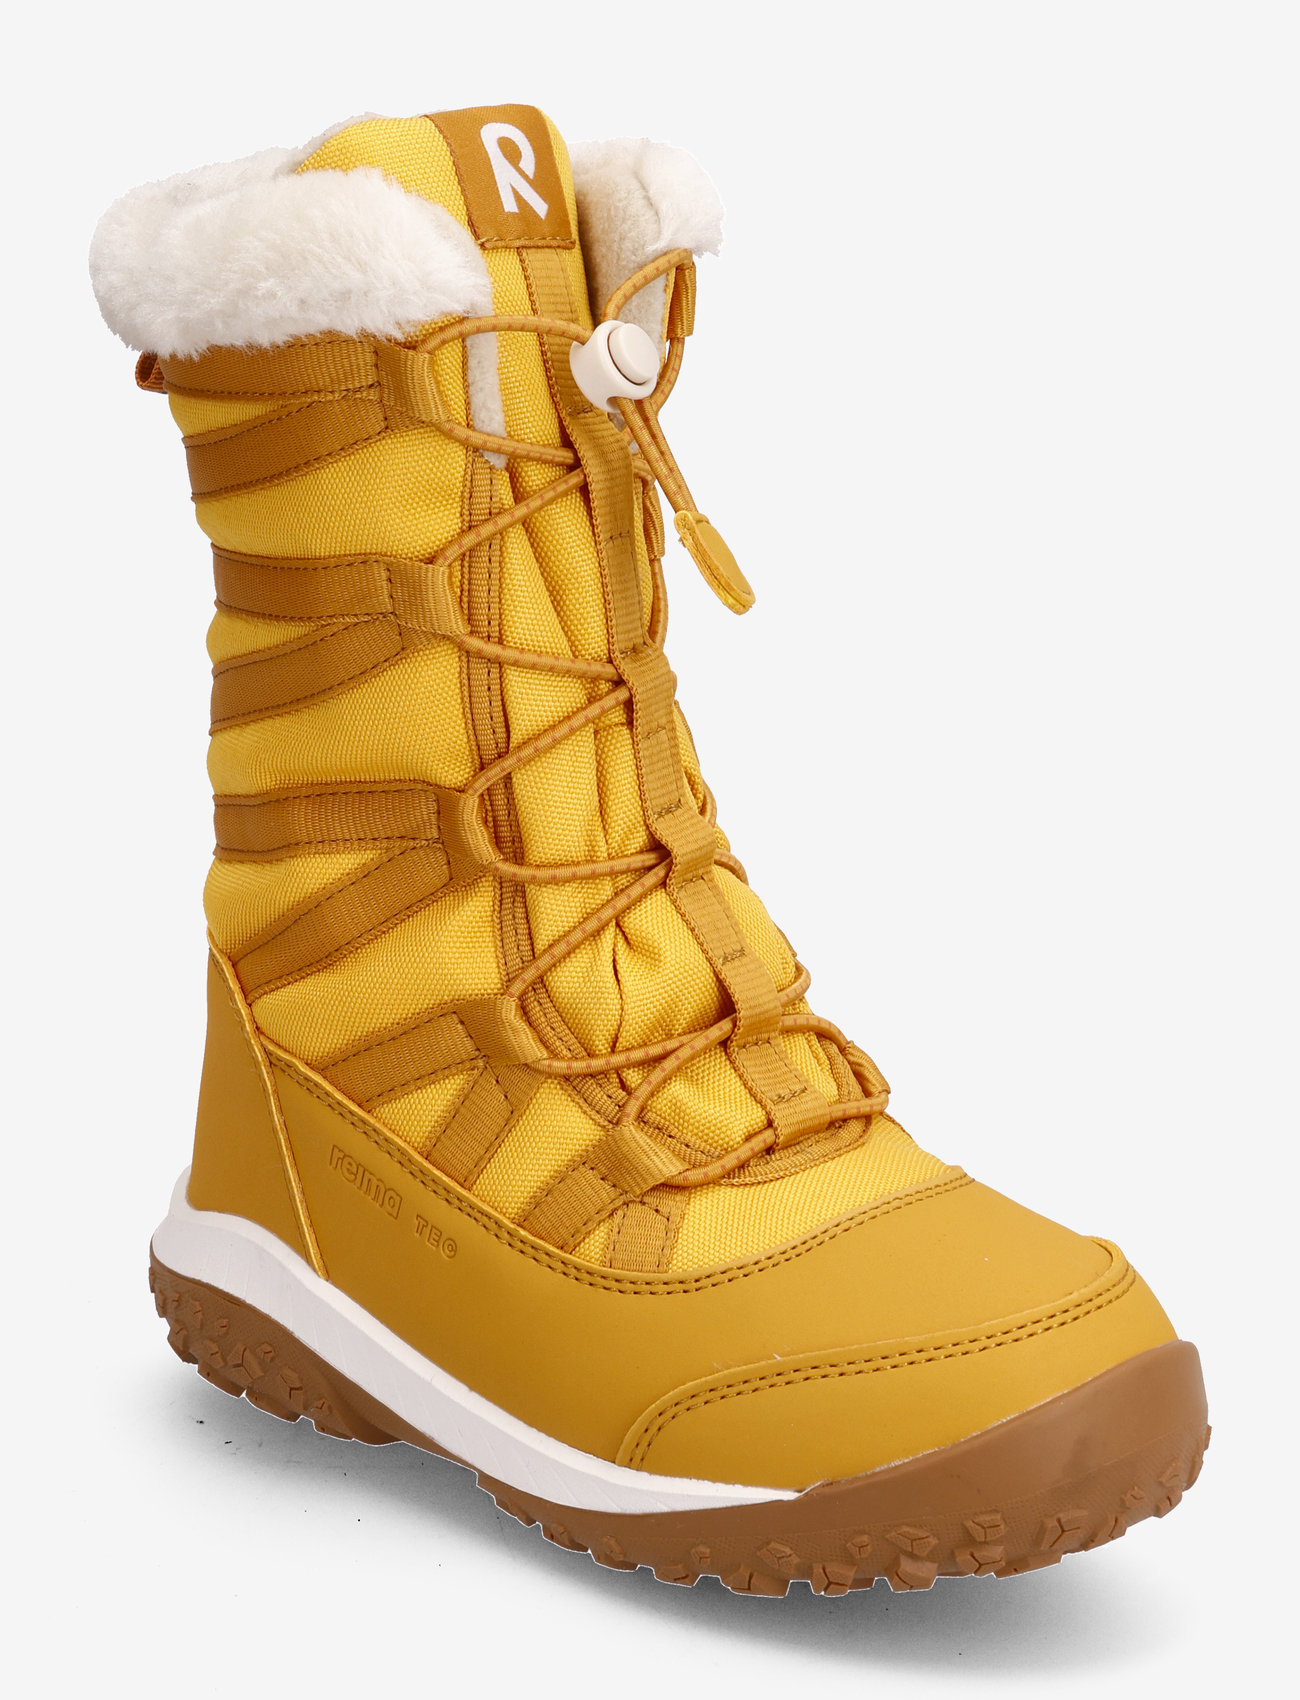 Reima - Reimatec winter boots, Samojedi - kinder - ochre yellow - 0